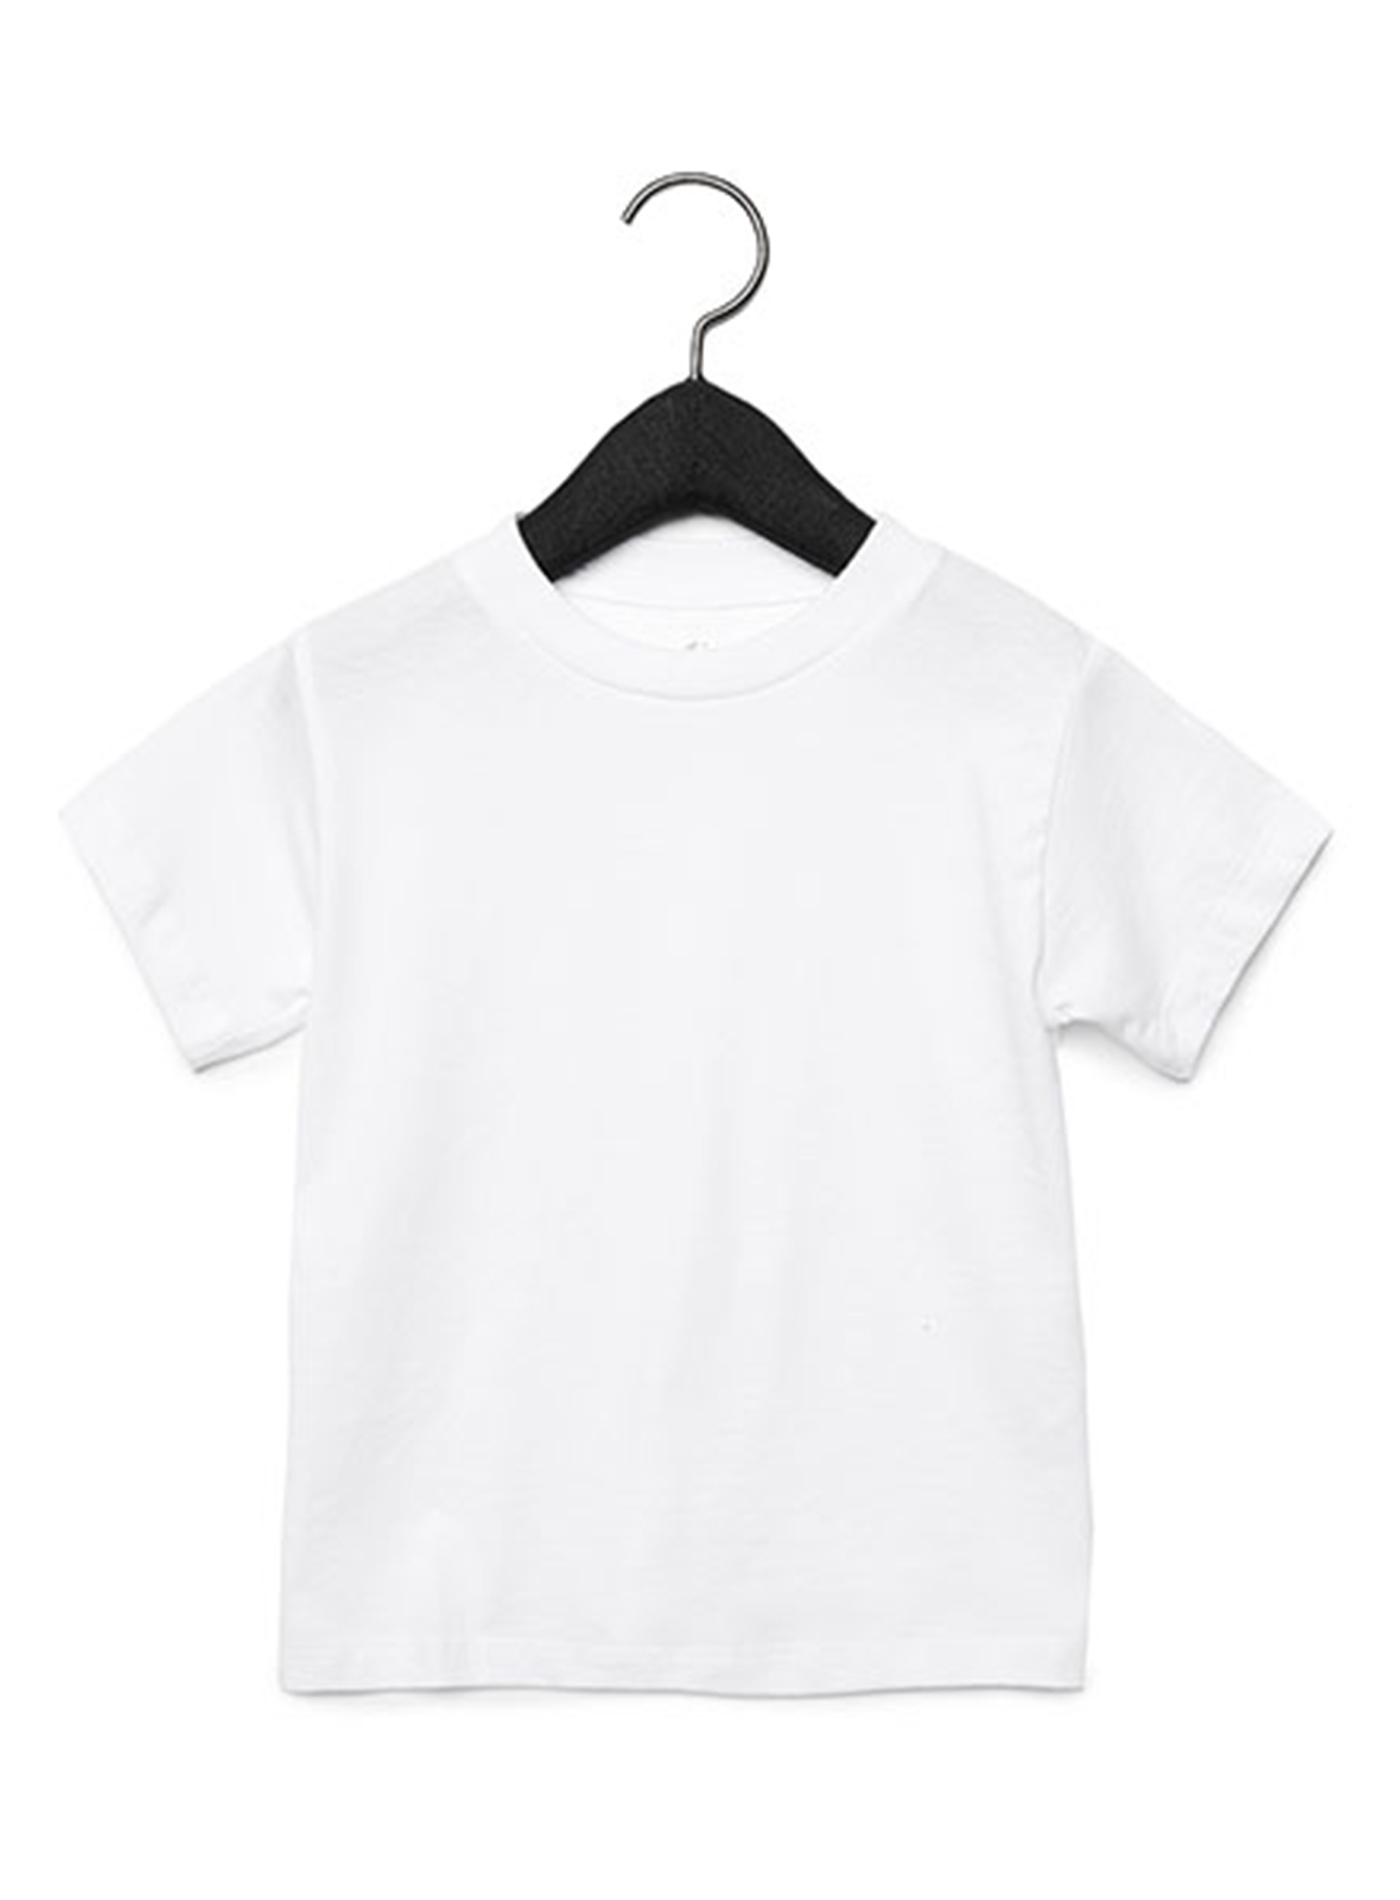 Dětské tričko Bella + Canvas Jersey - Bílá 2T (92)